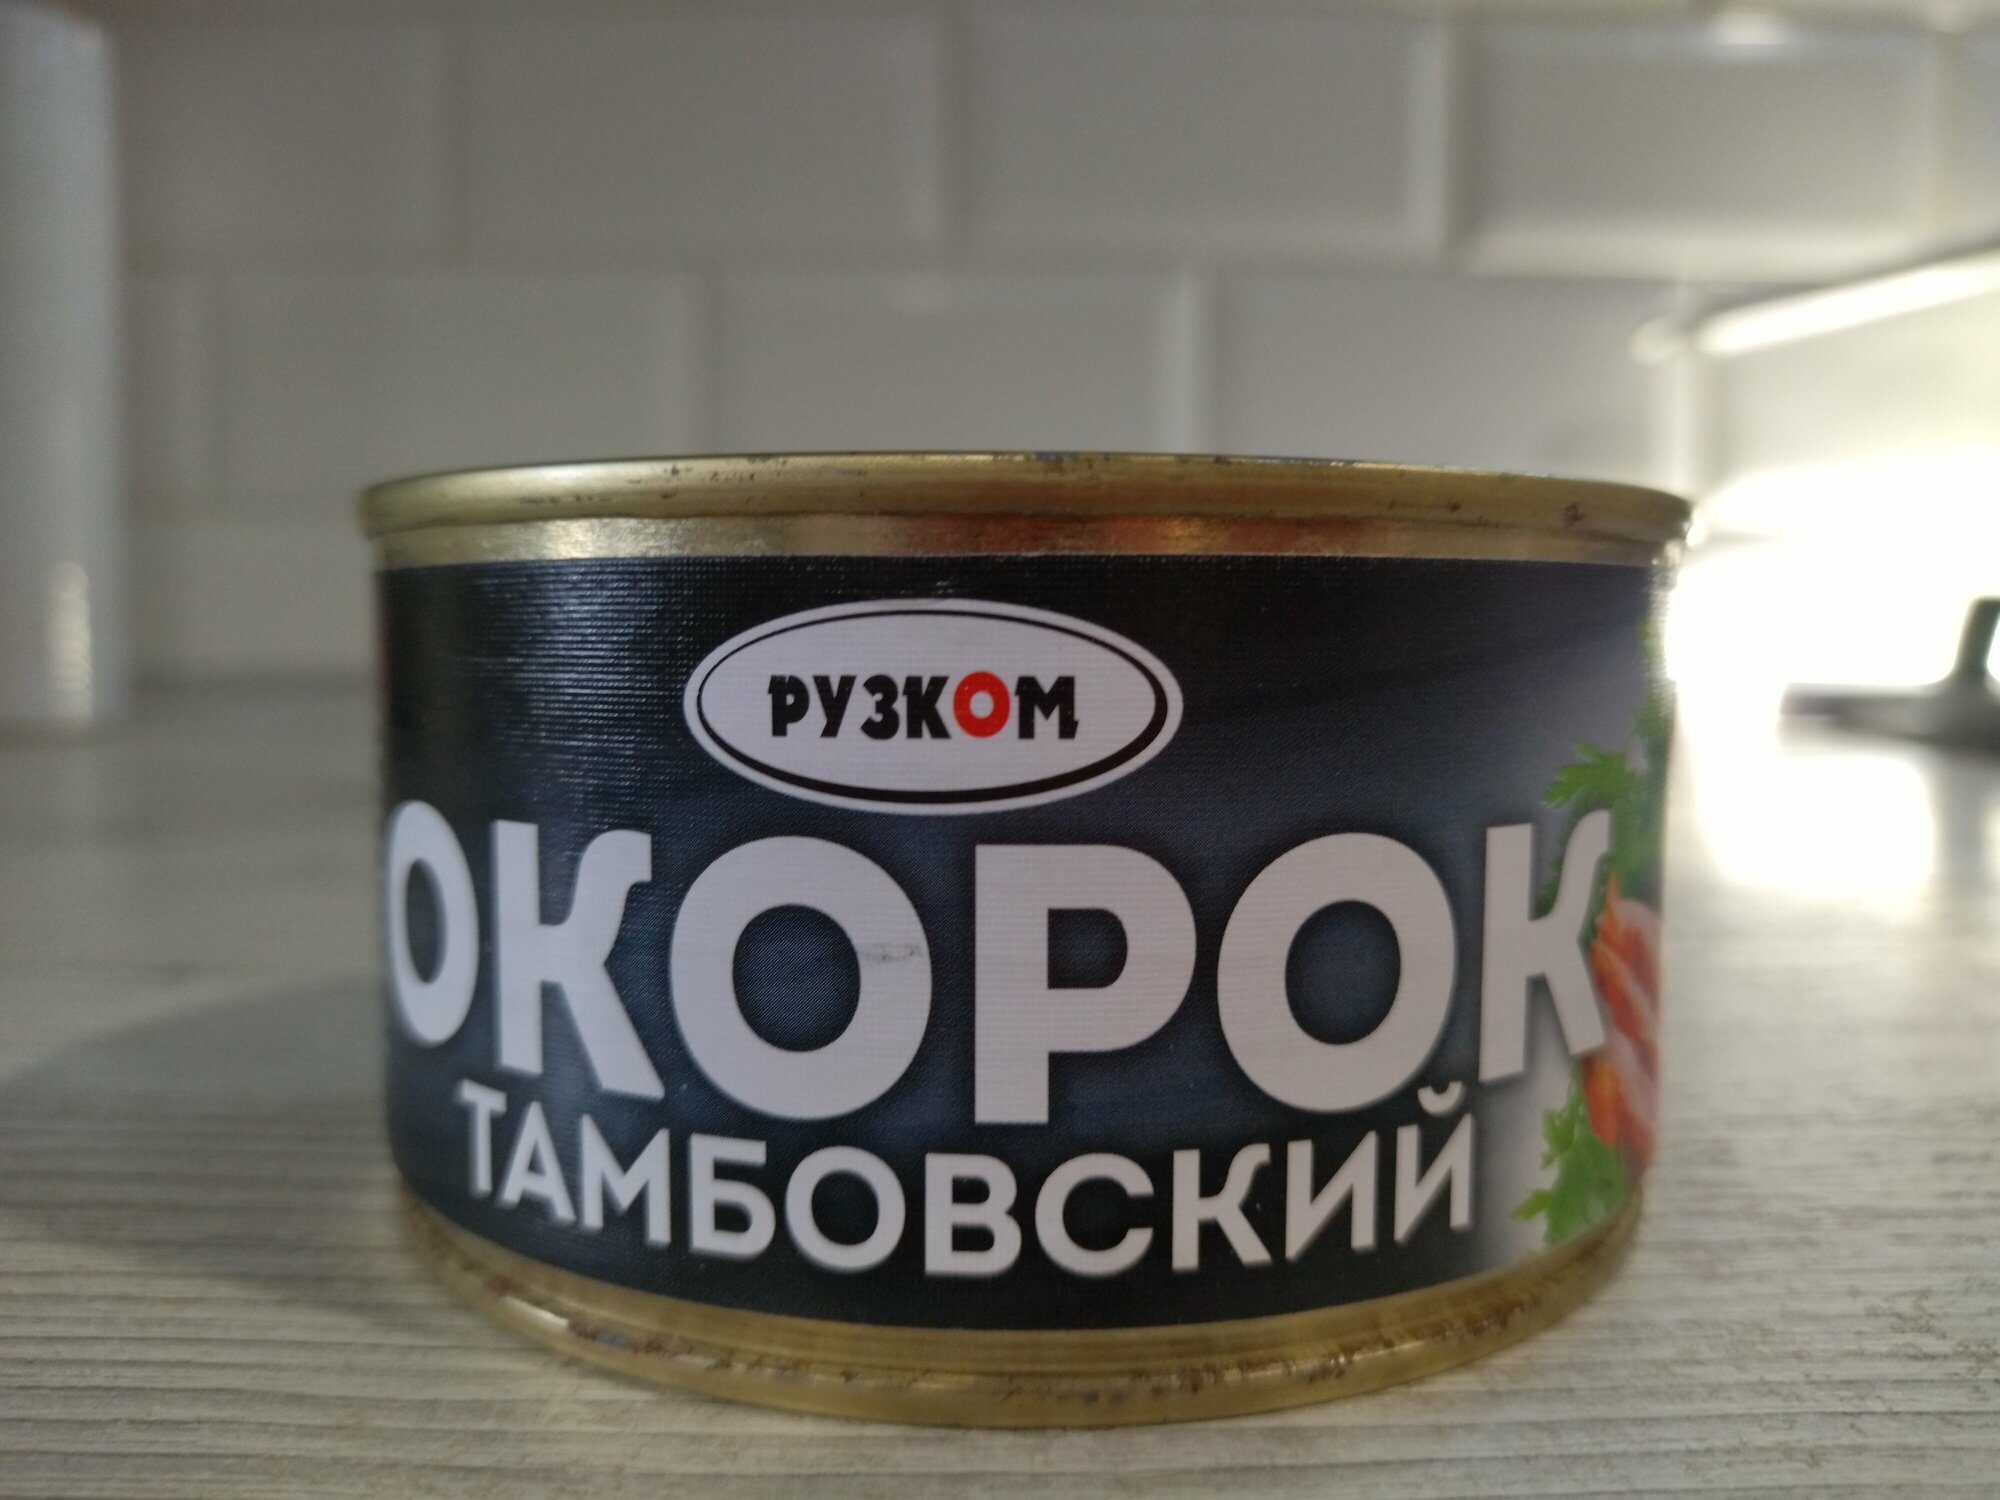 "Тамбовский окорок" от Рузкома - 325 грамм вкусного мяса